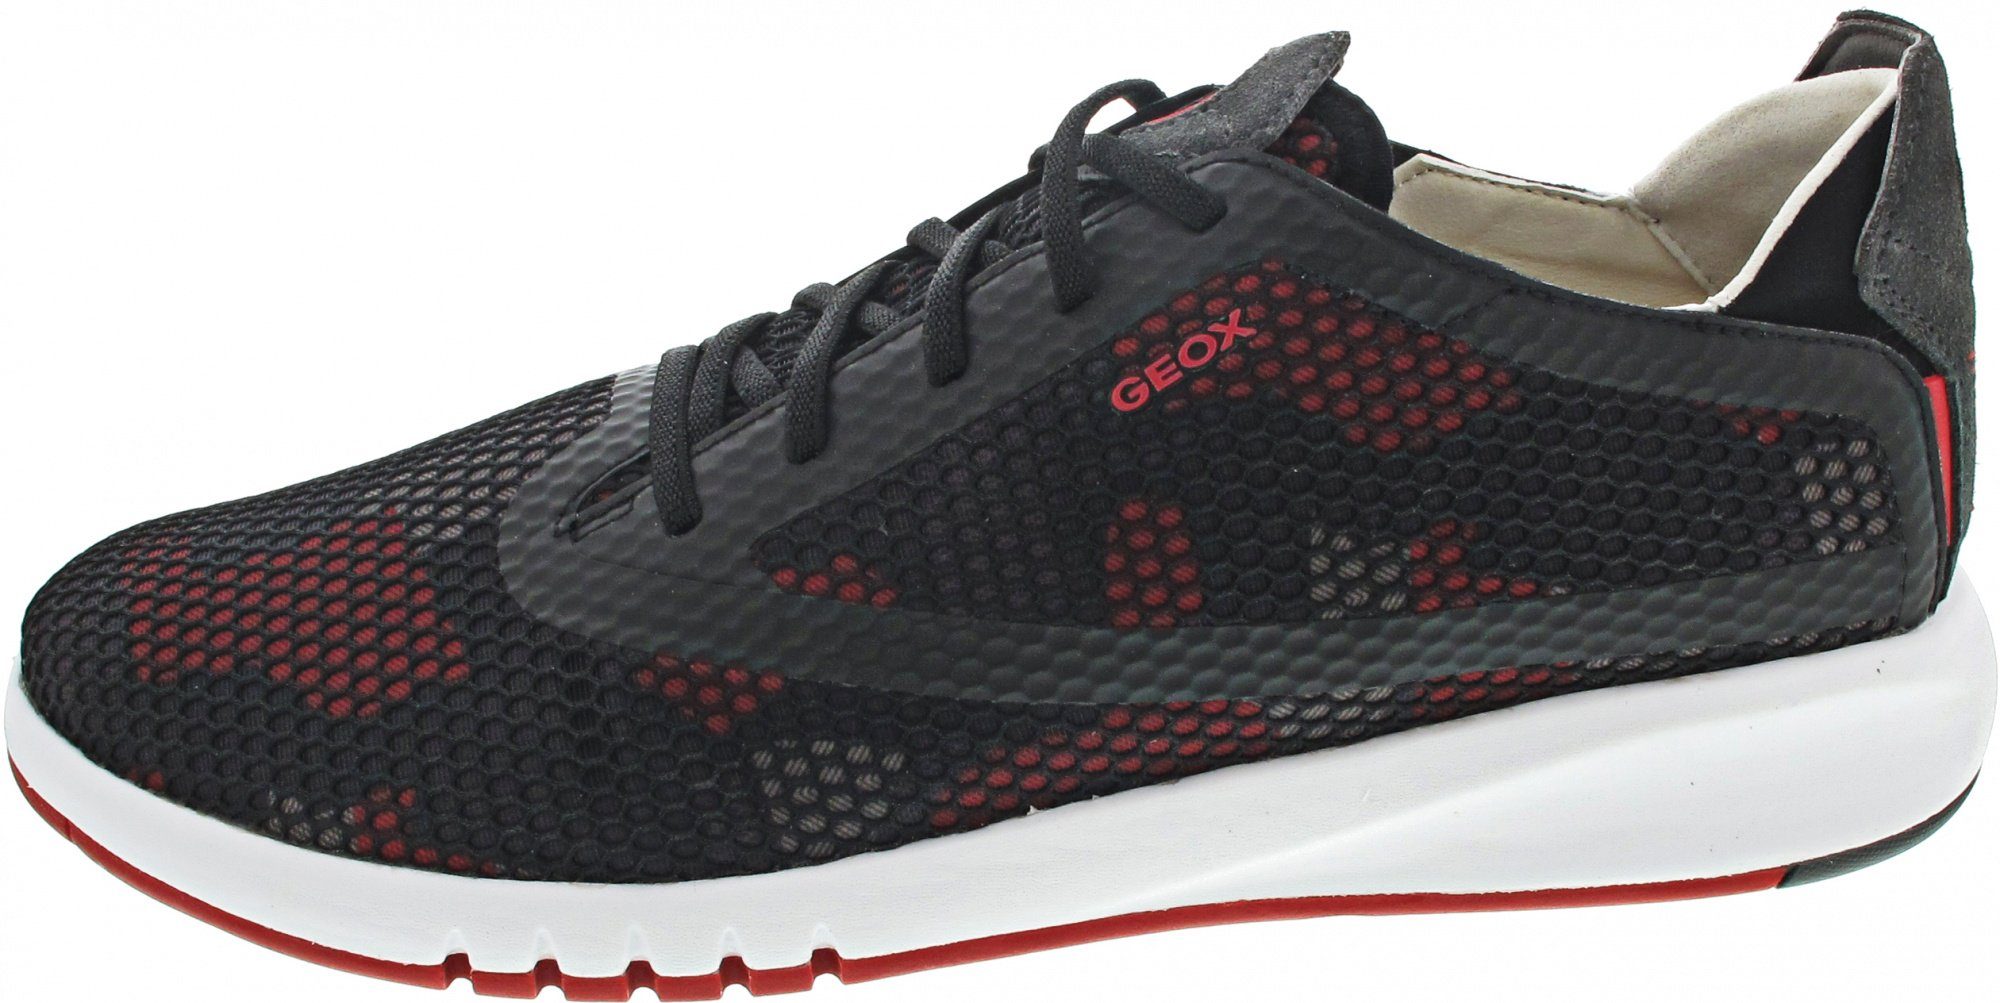 Geox »Aerantis« Sneaker atmungsaktiv, Wechselfußbett online kaufen | OTTO